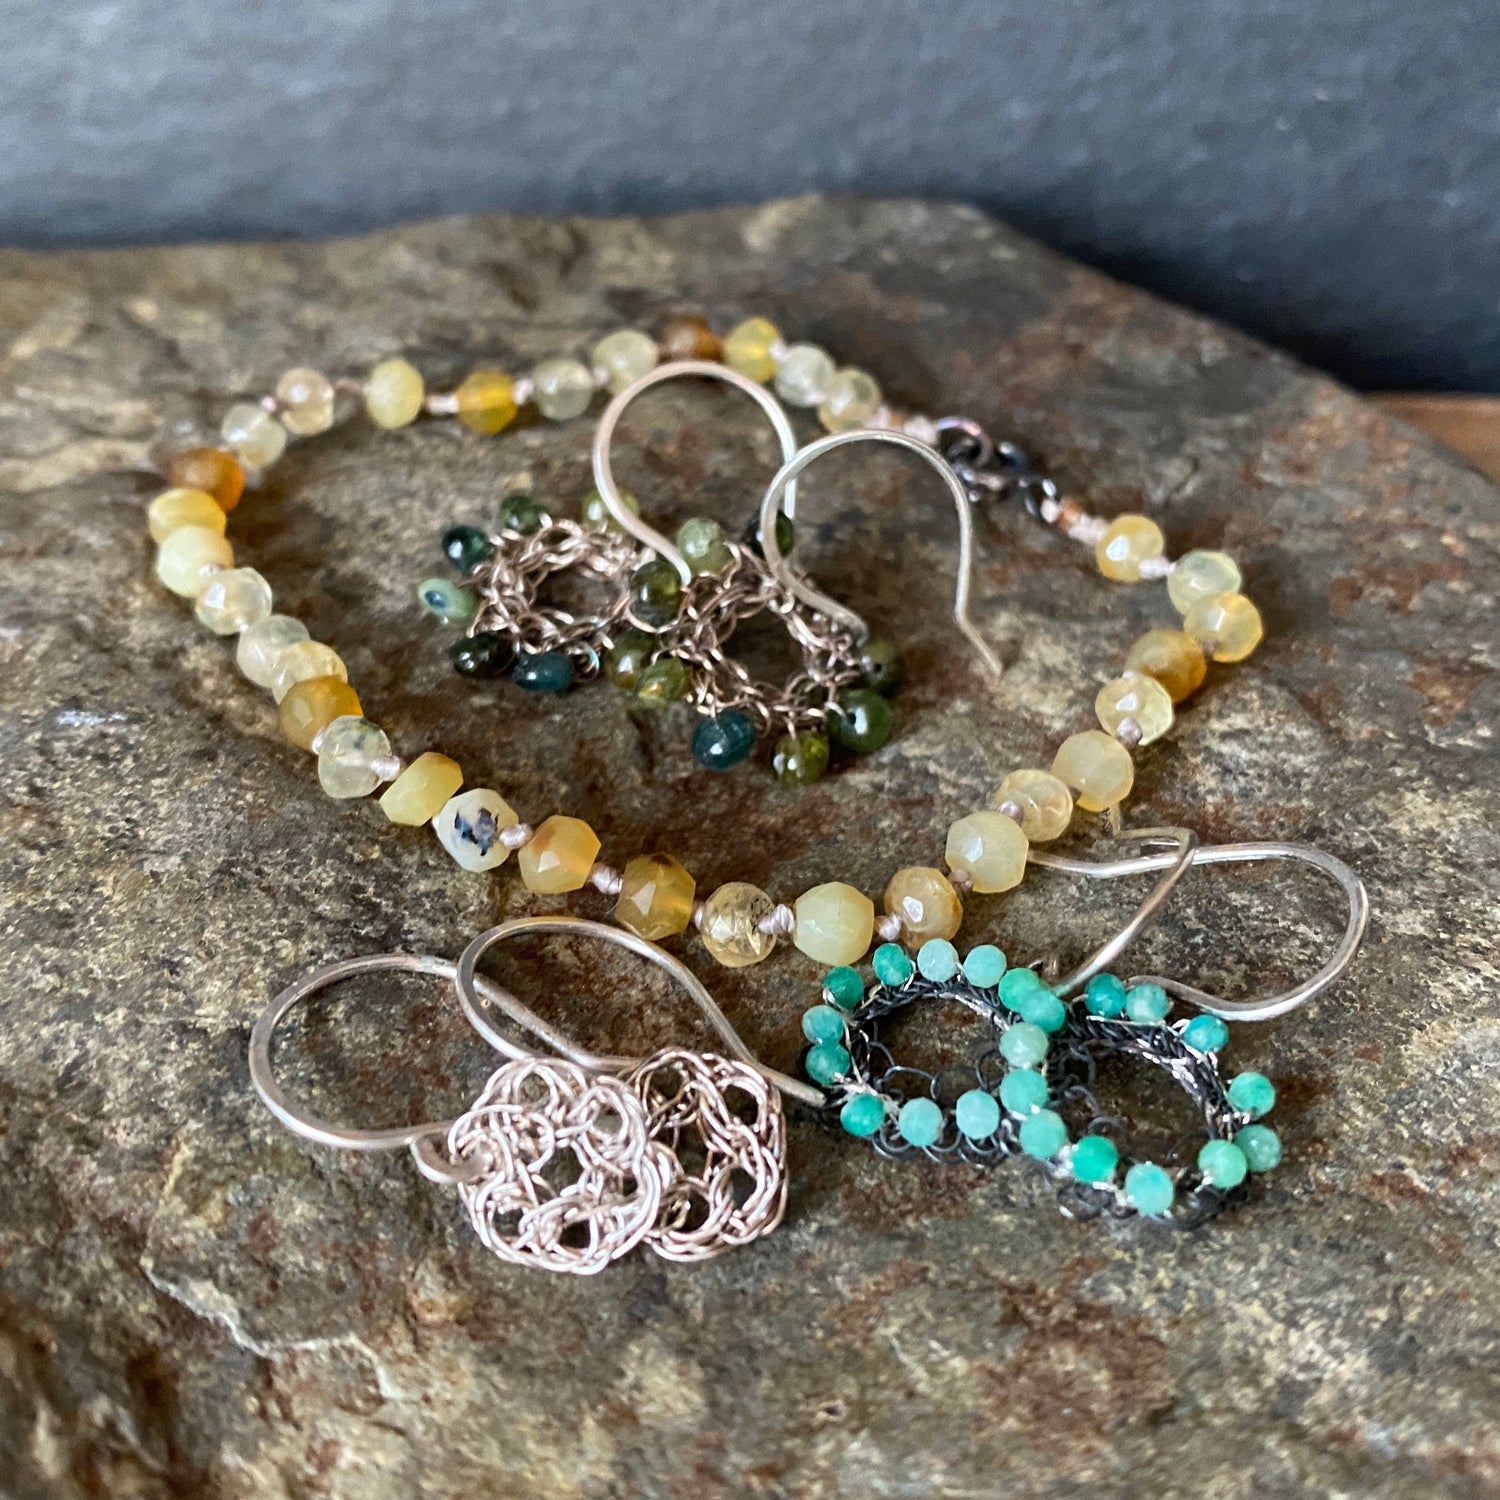 Seed Bead Jewelry Ideas//Bracelet & Earrings//Handmade Jewelry